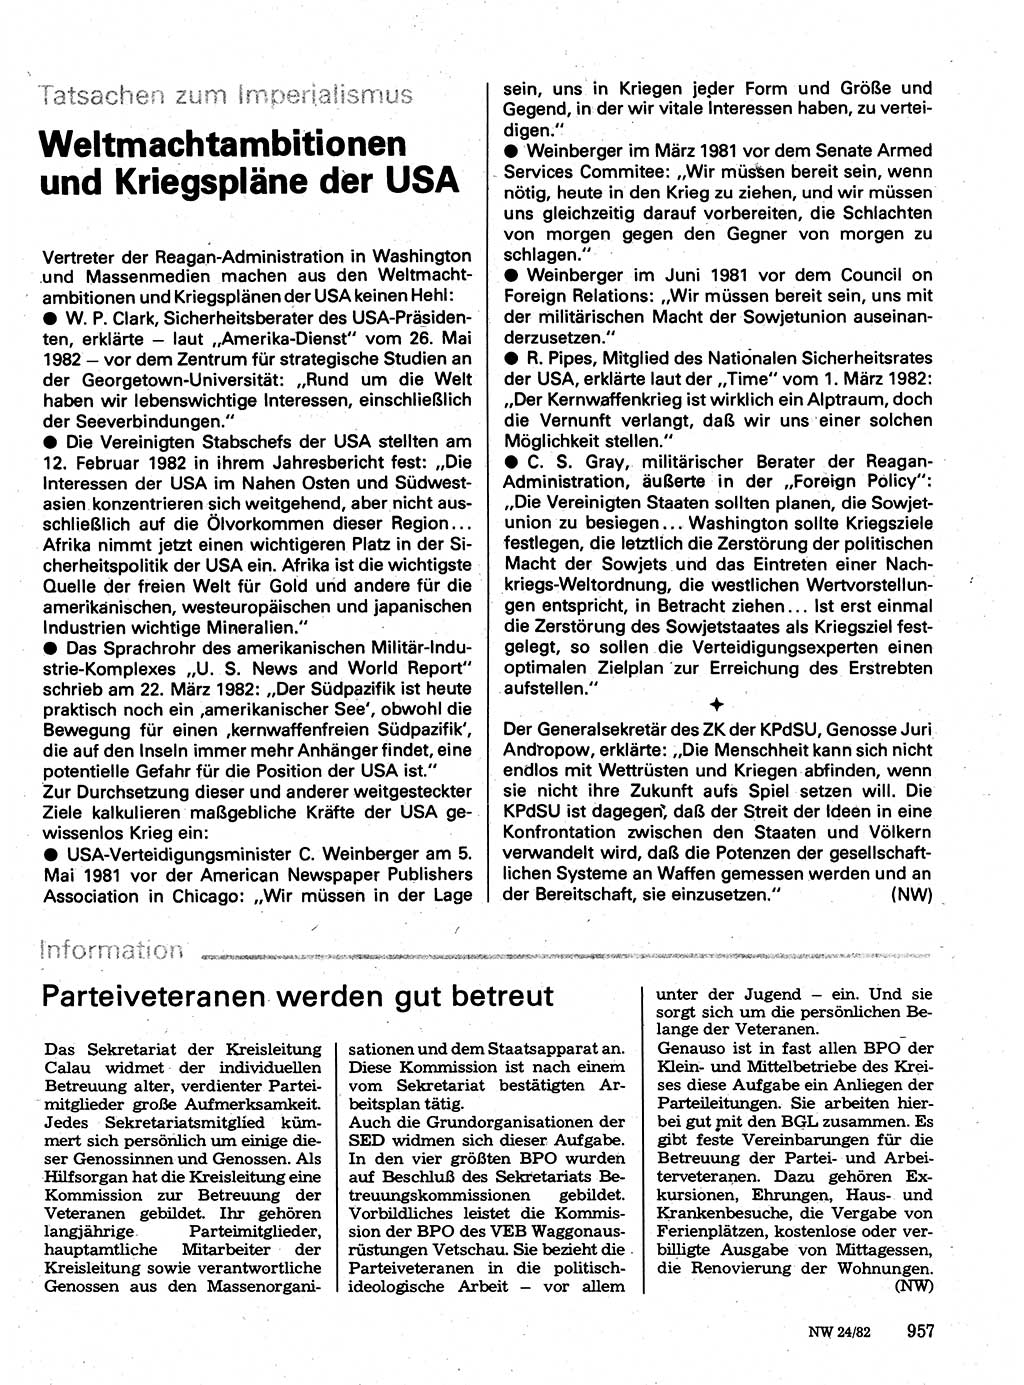 Neuer Weg (NW), Organ des Zentralkomitees (ZK) der SED (Sozialistische Einheitspartei Deutschlands) für Fragen des Parteilebens, 37. Jahrgang [Deutsche Demokratische Republik (DDR)] 1982, Seite 957 (NW ZK SED DDR 1982, S. 957)